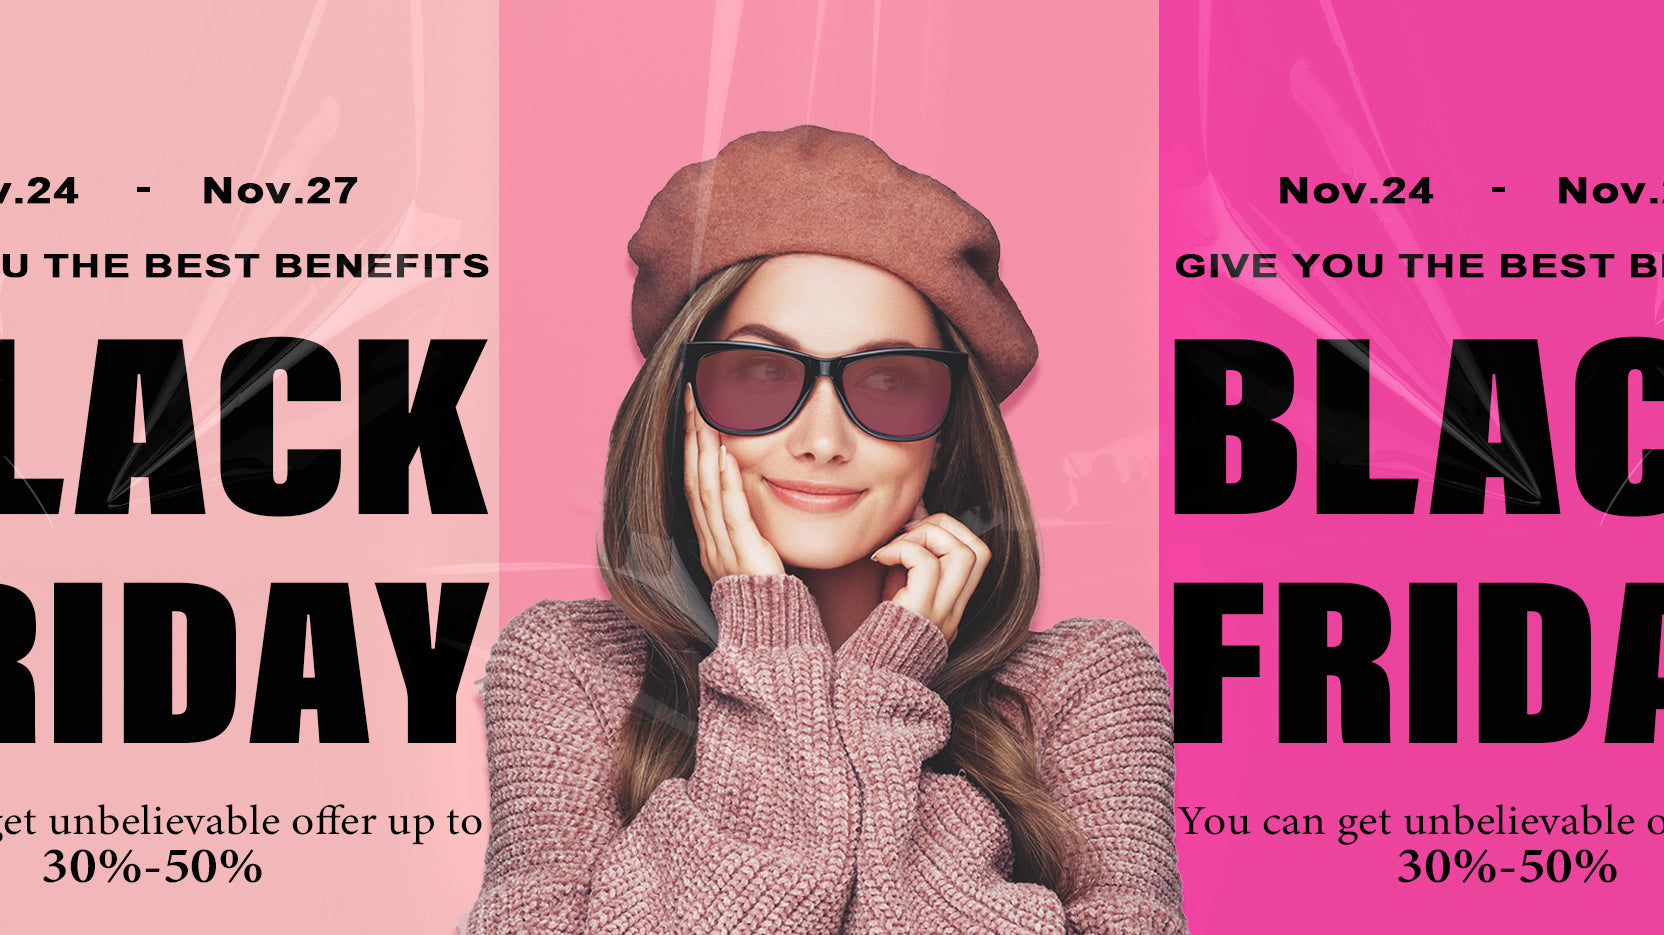 Black Friday Extravaganza: LensAlter's Hottest Picks at 30%-50% Off!